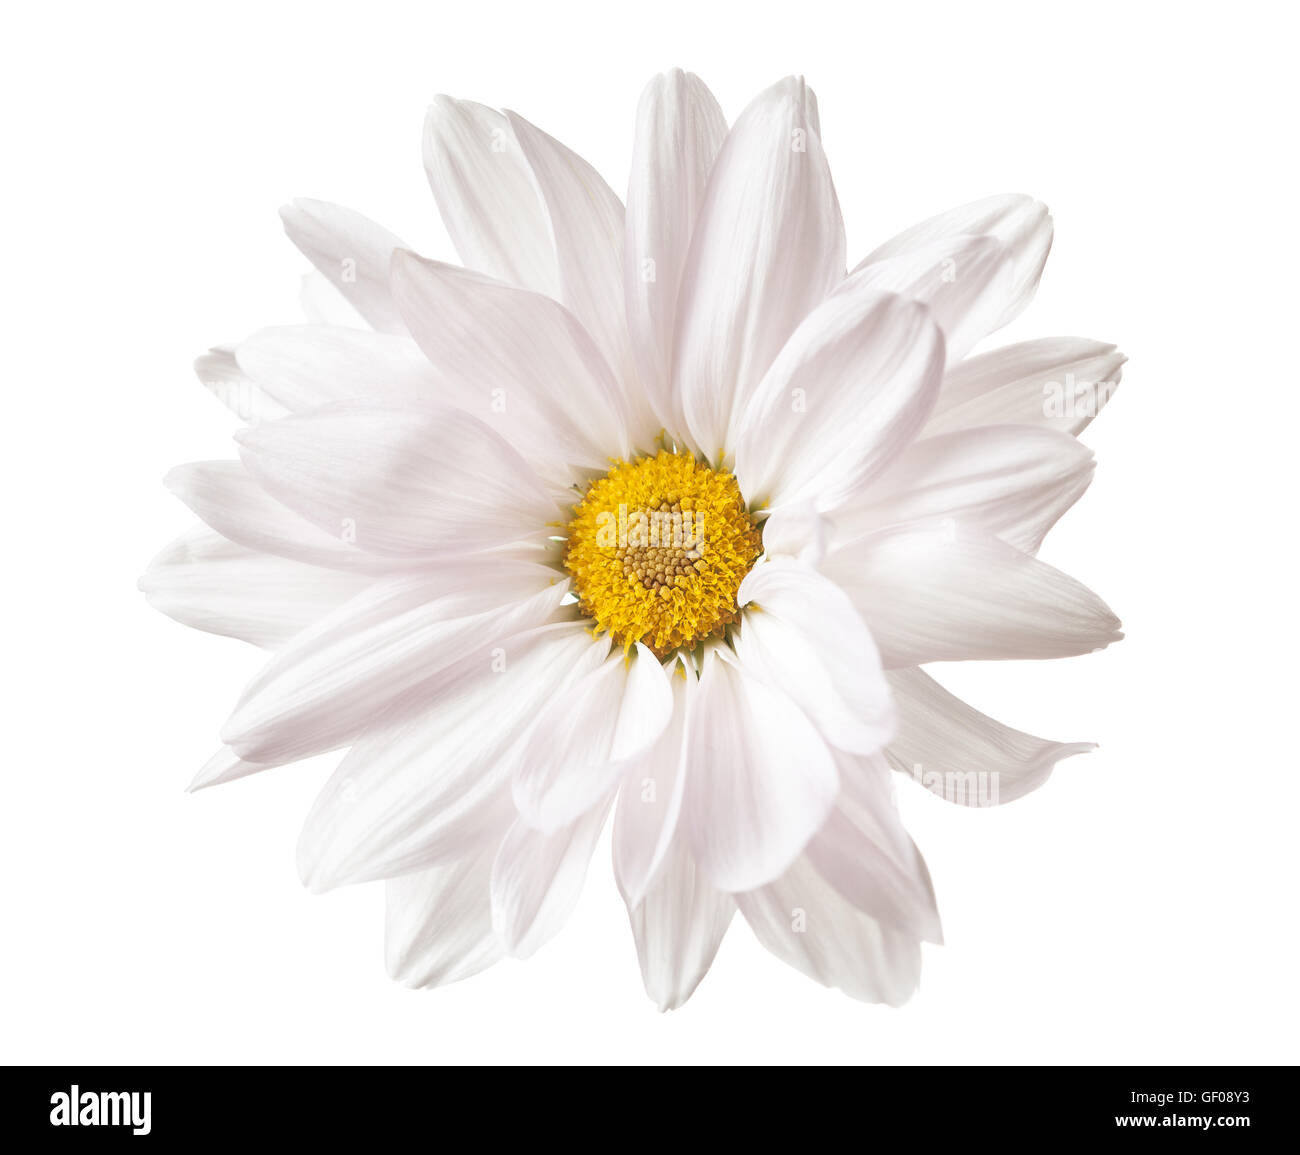 Daisy fleur blanche de marguerites jaunes fleurs floral fleur isolée Banque D'Images